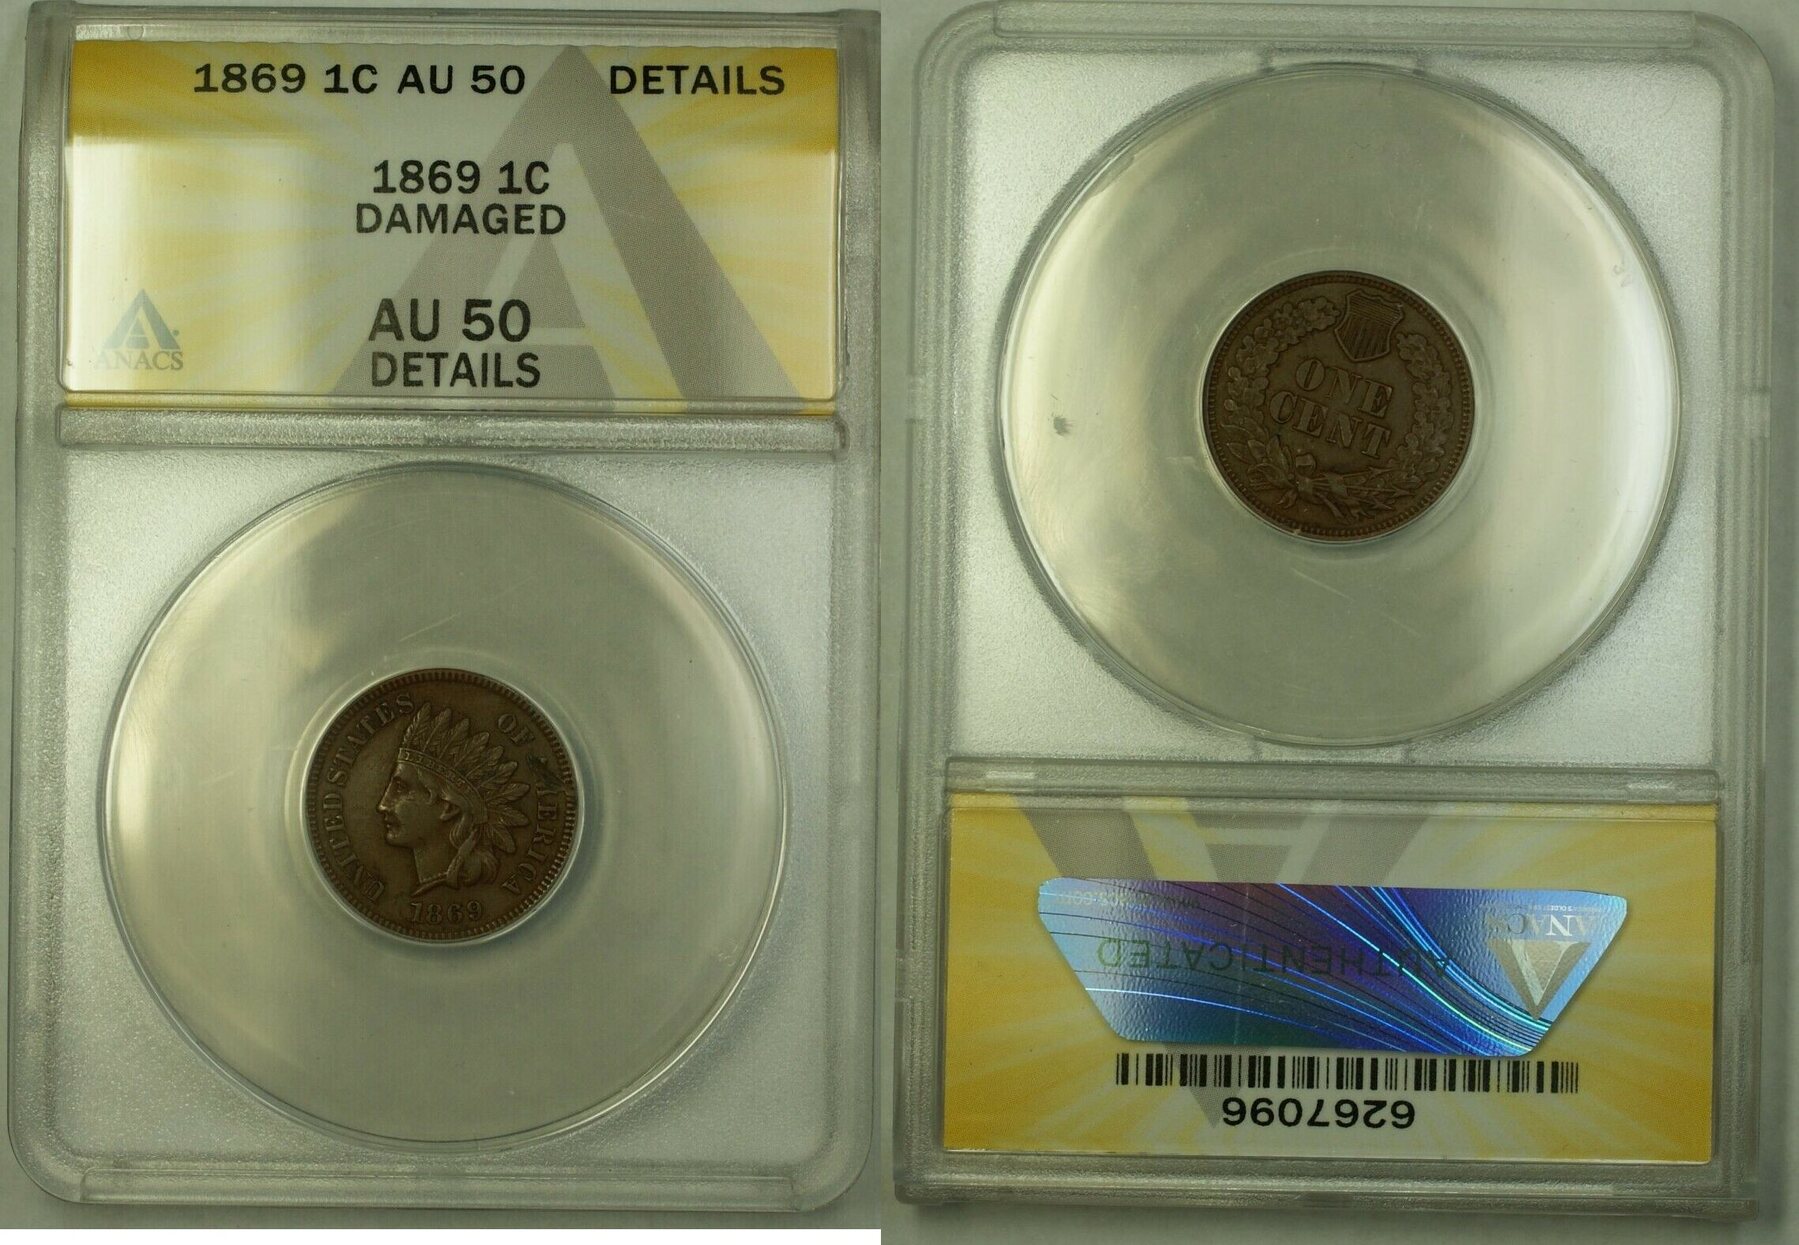 Сувенирные монеты BLT. 1795 Reeded Edge 1c Coin. C65n-c25a/3p. 50 details